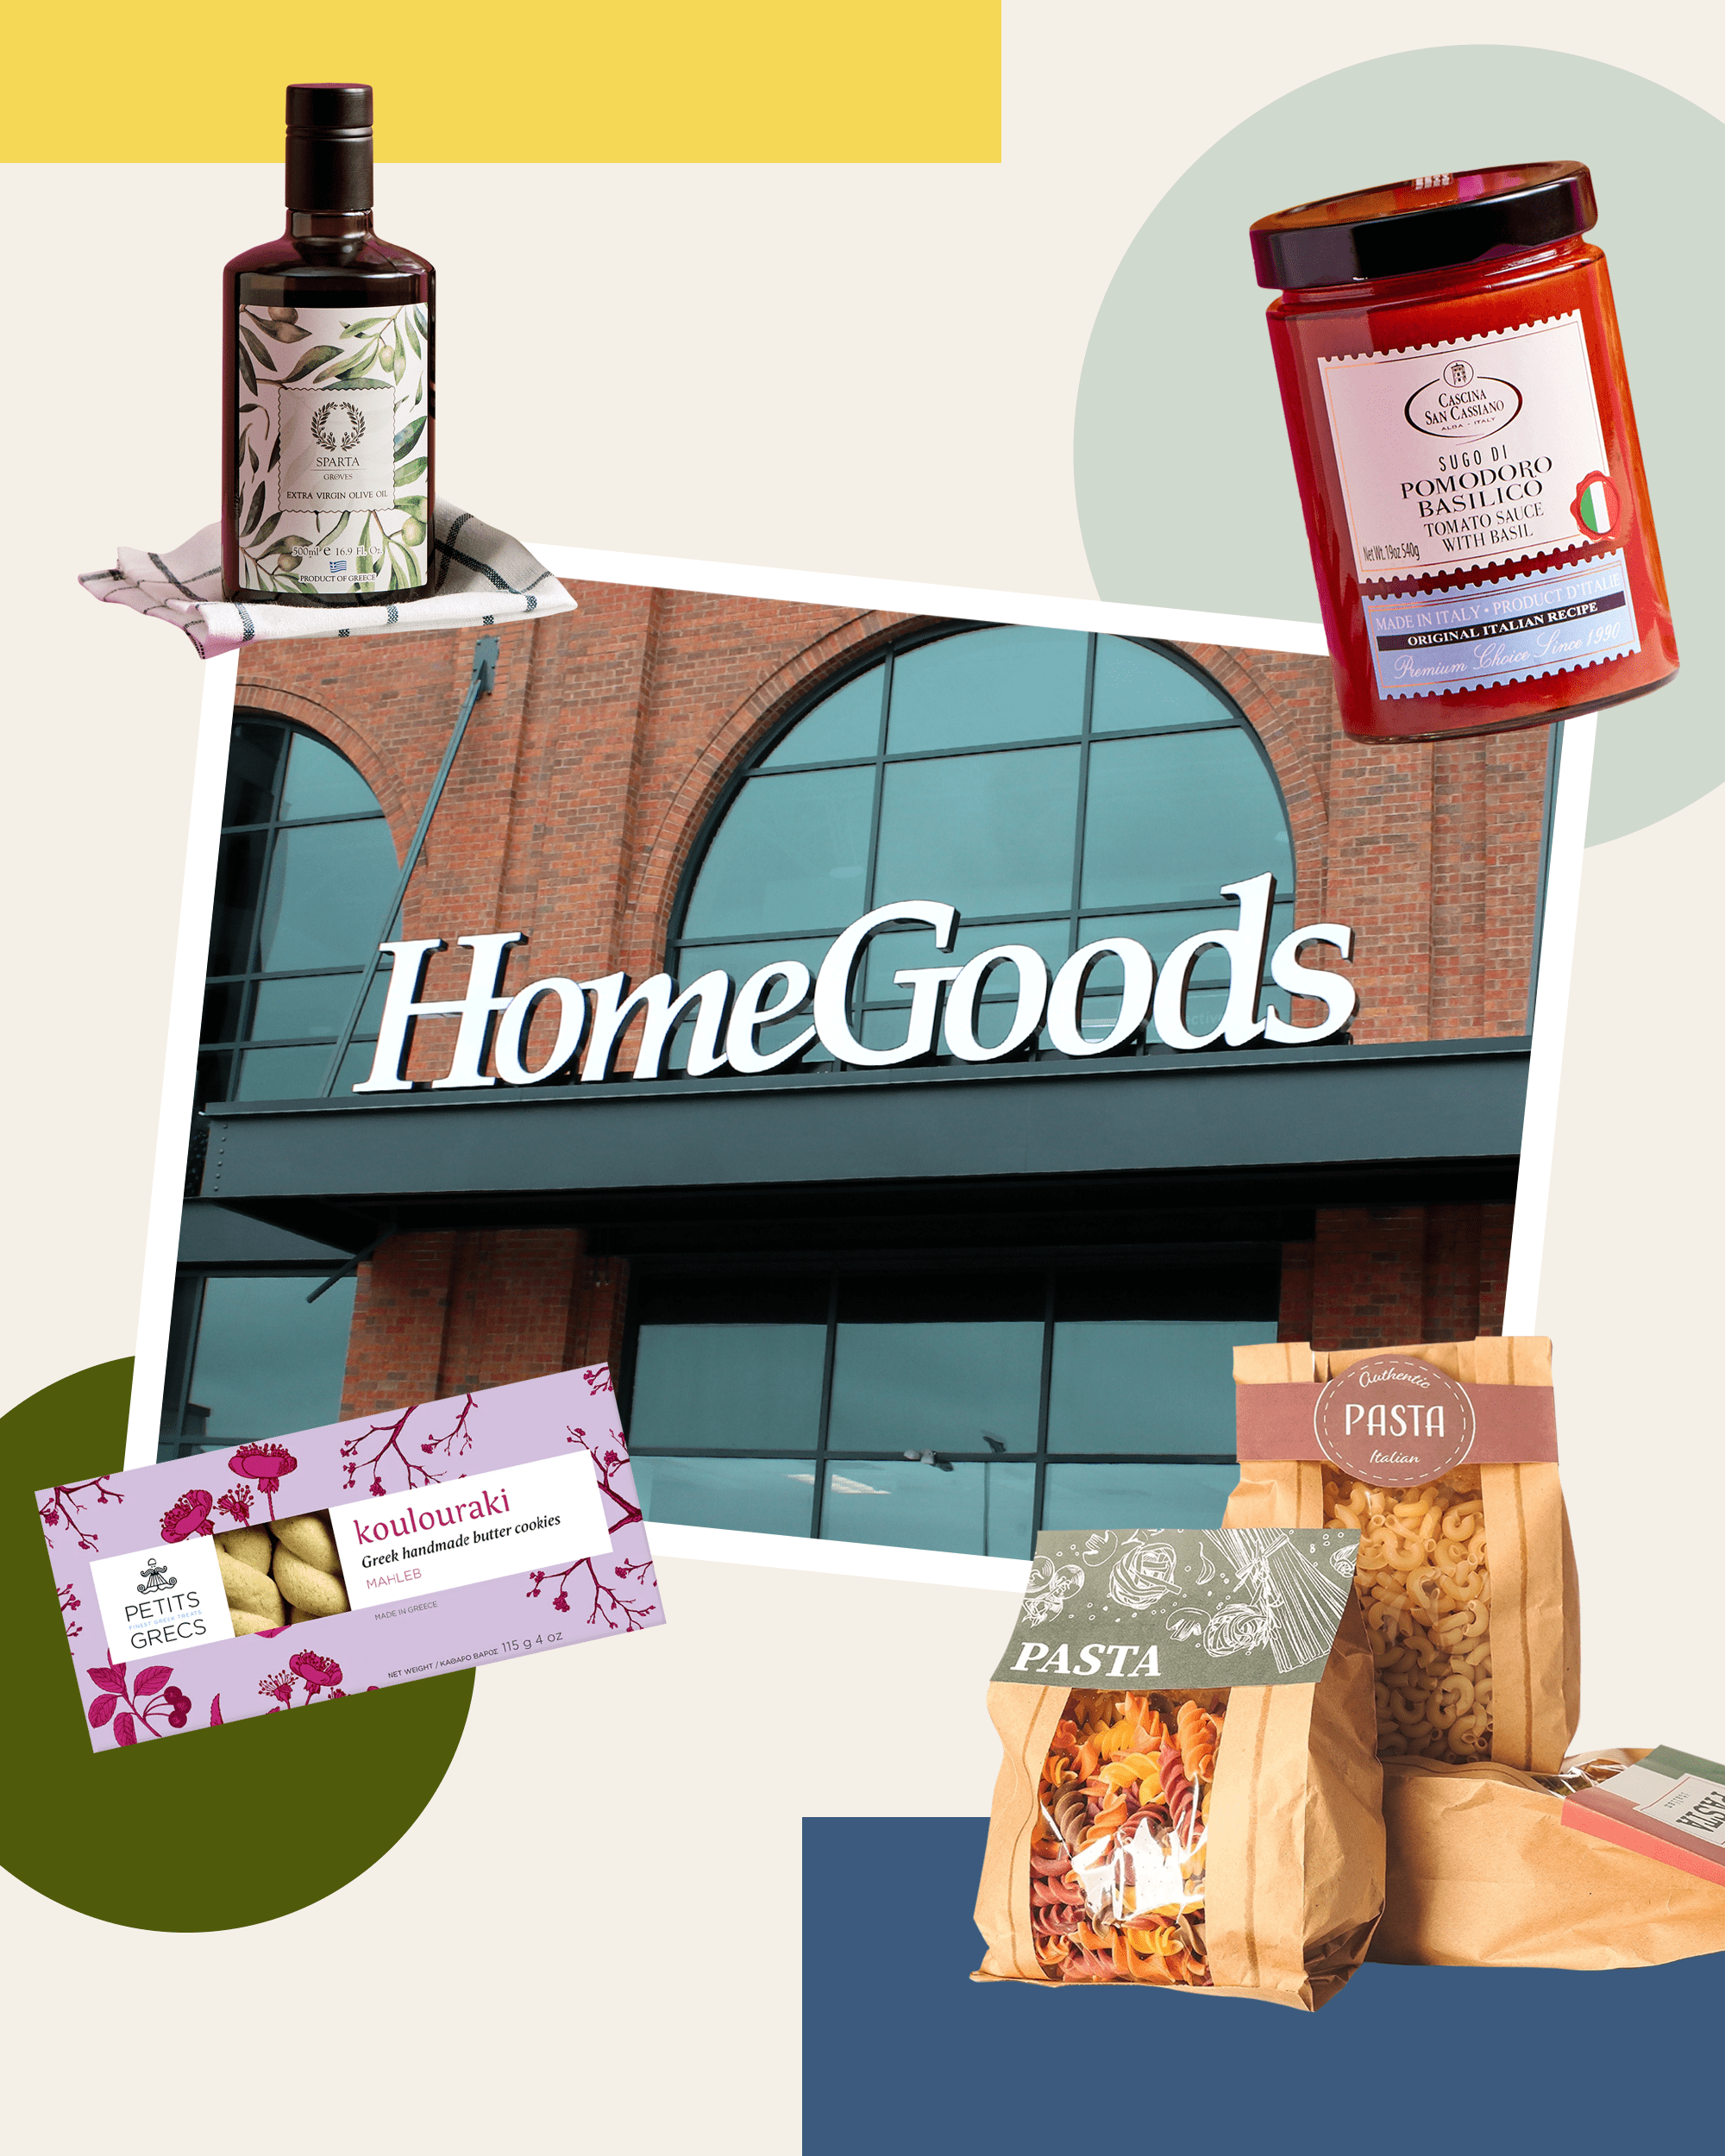 I Shop for Groceries at HomeGoods — Favorite Food I Buy